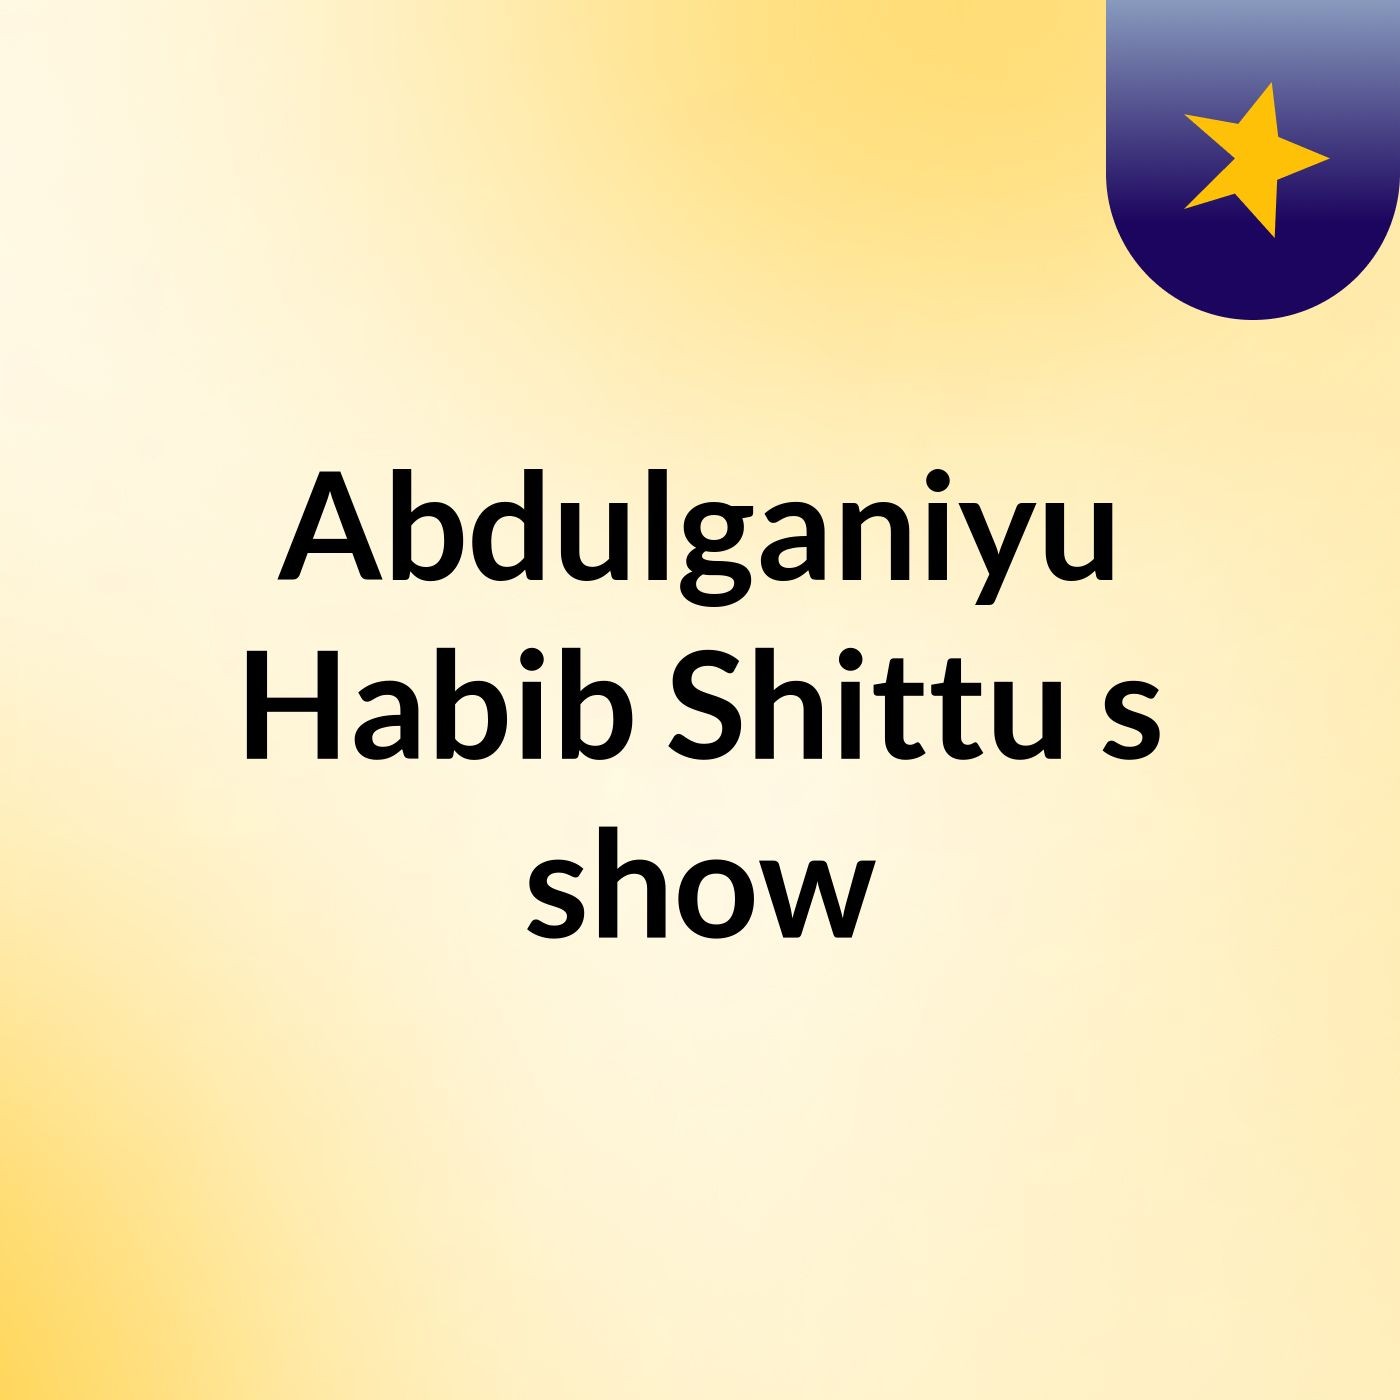 Episode 2 - Abdulganiyu Habib Shittu's show